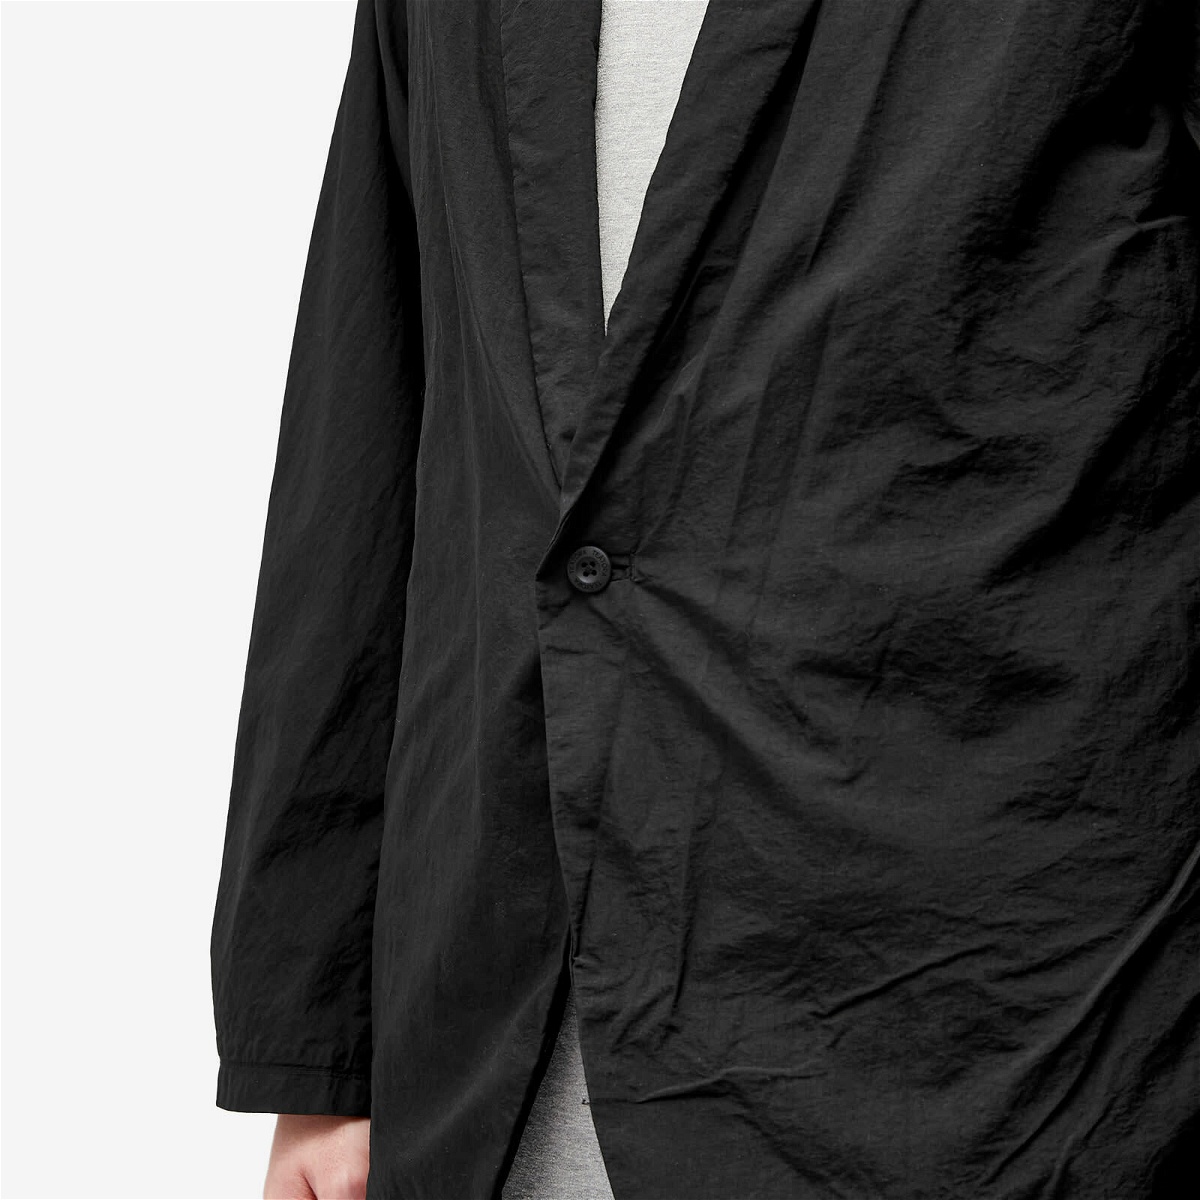 TEATORA Men's Packable Wallet Jacket Plus in Black TEATORA